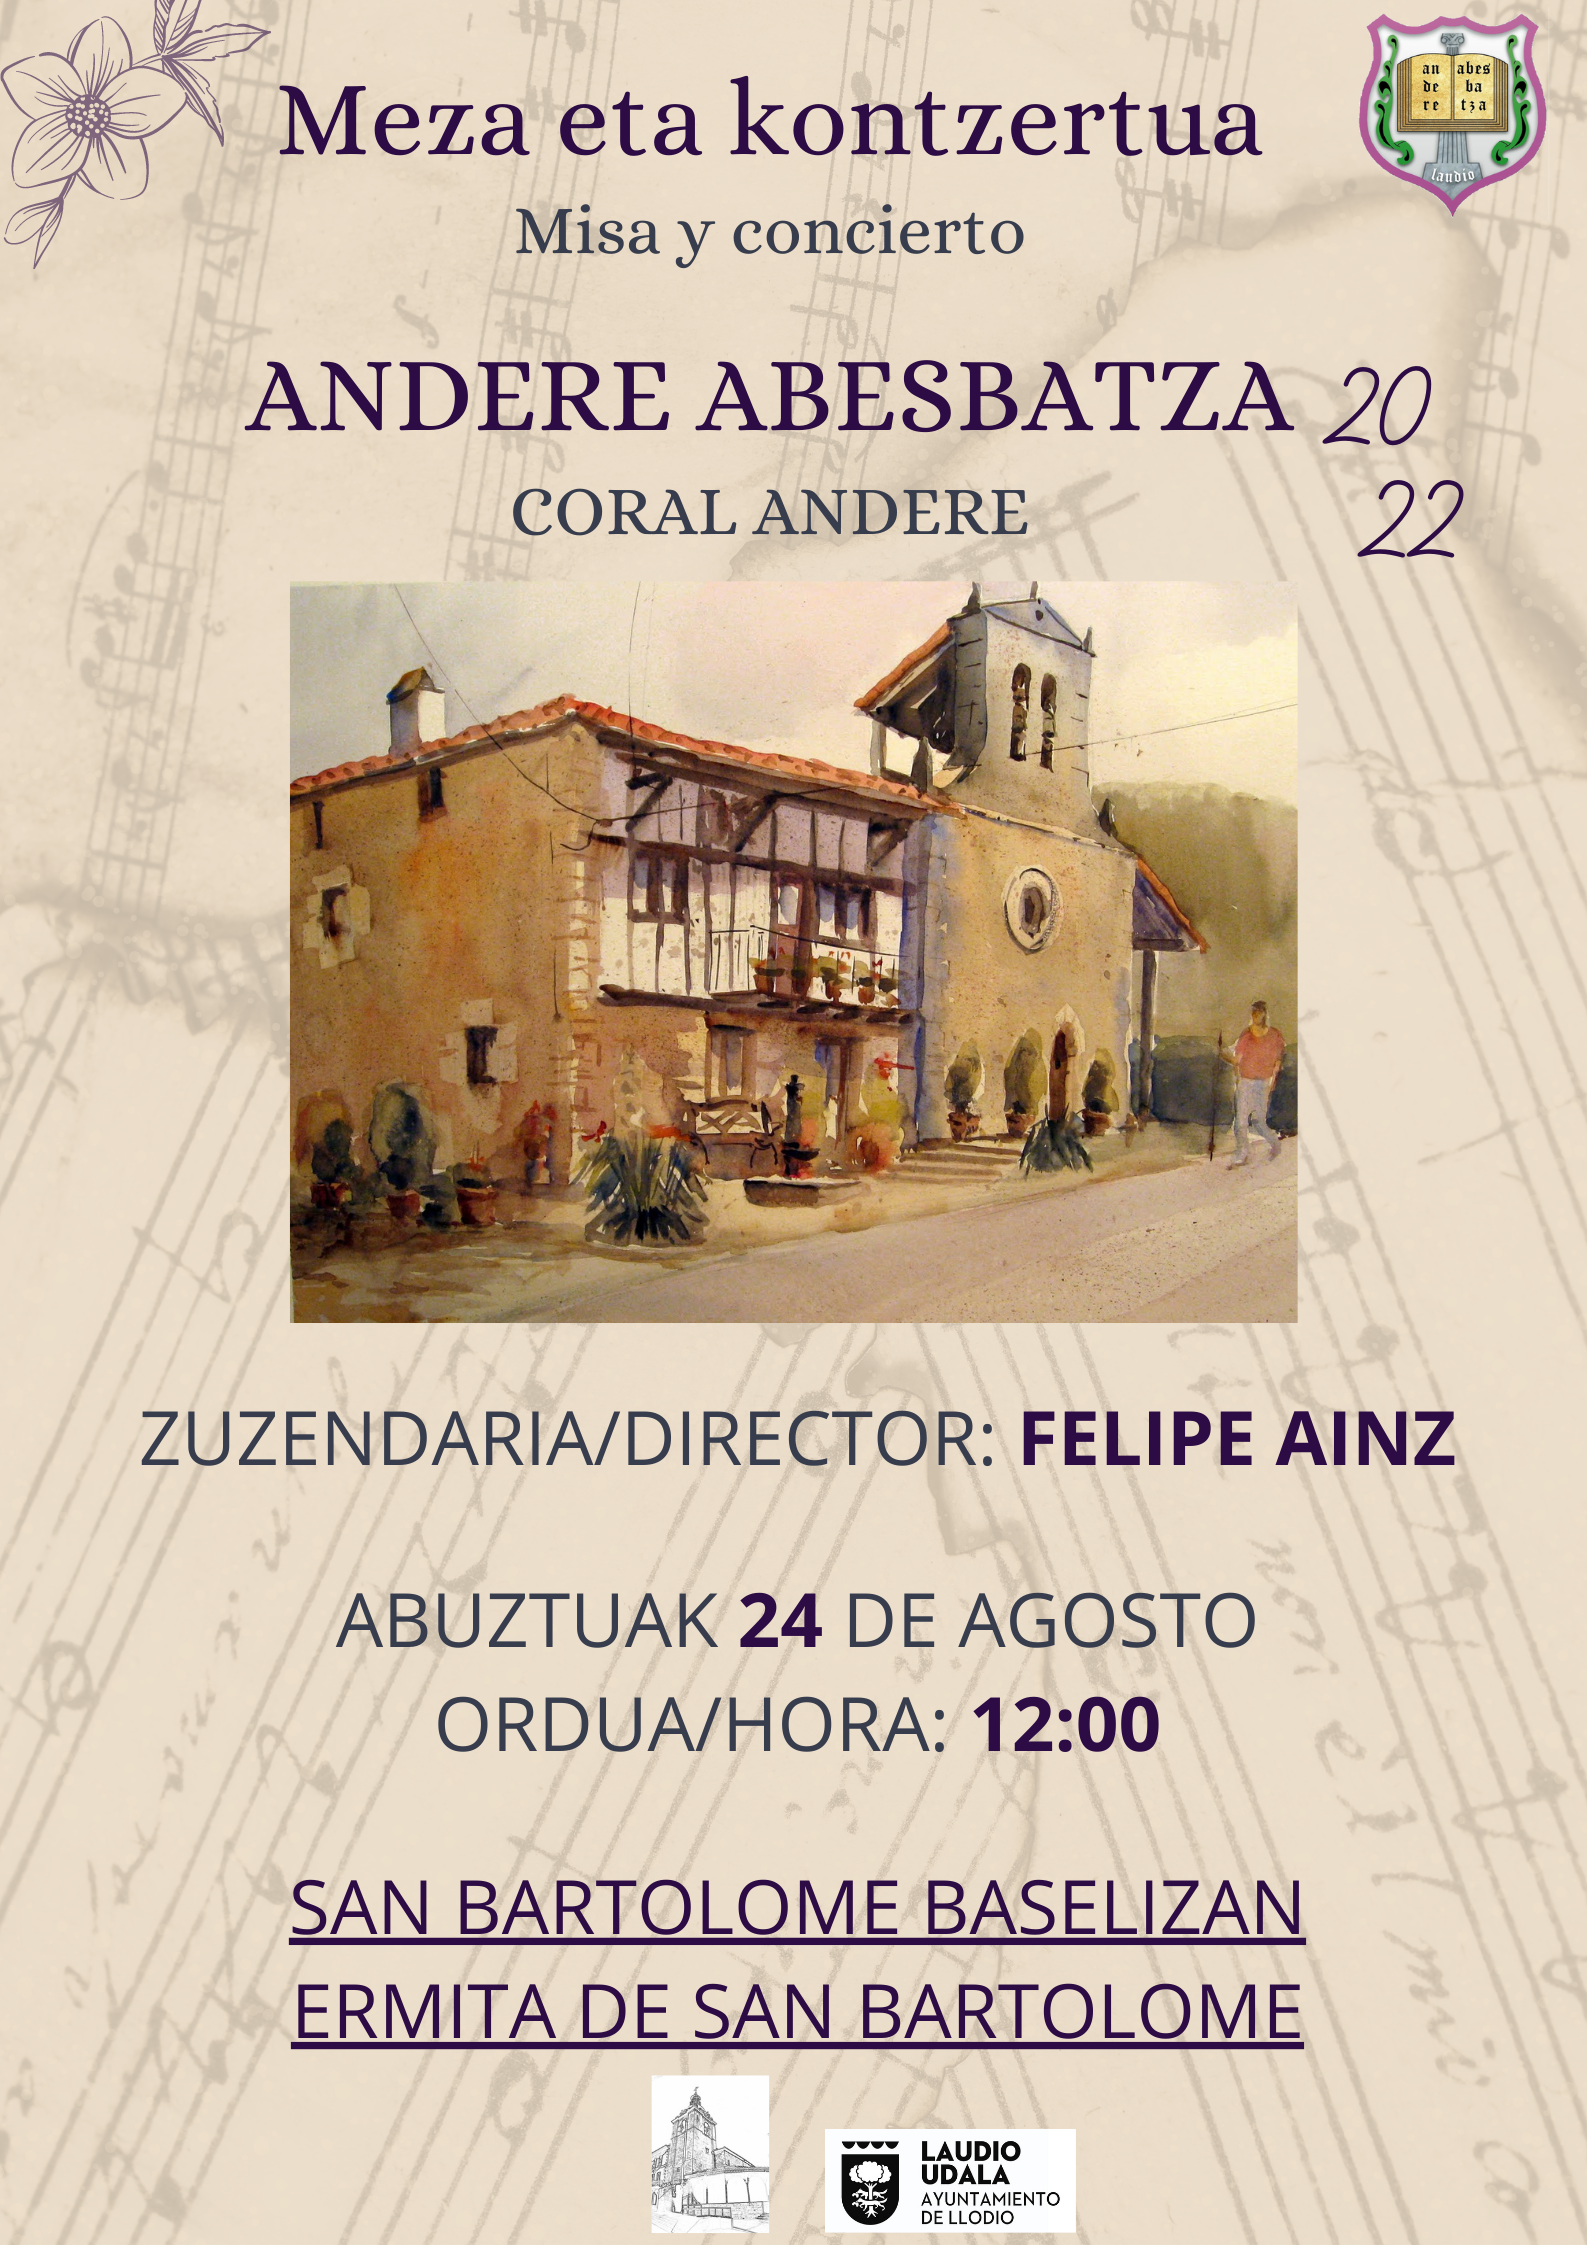 Concierto Andere abesbatza el día 24 de Agosto en la Ermita de San Bartolome en Llodio a las 12h:00.